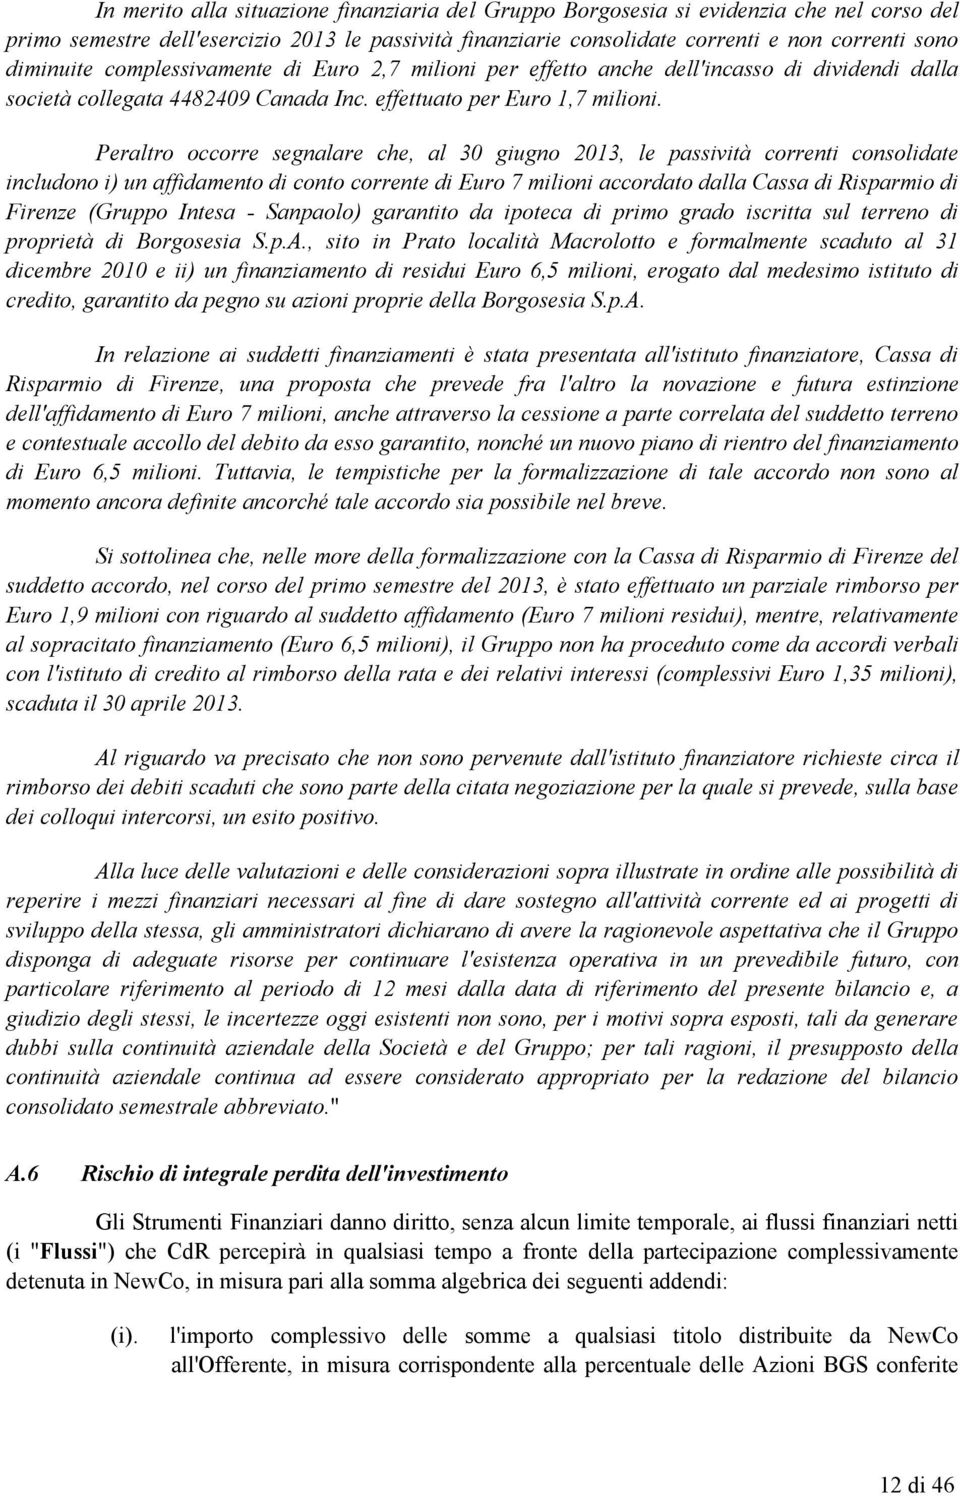 Peraltro occorre segnalare che, al 30 giugno 2013, le passività correnti consolidate includono i) un affidamento di conto corrente di Euro 7 milioni accordato dalla Cassa di Risparmio di Firenze